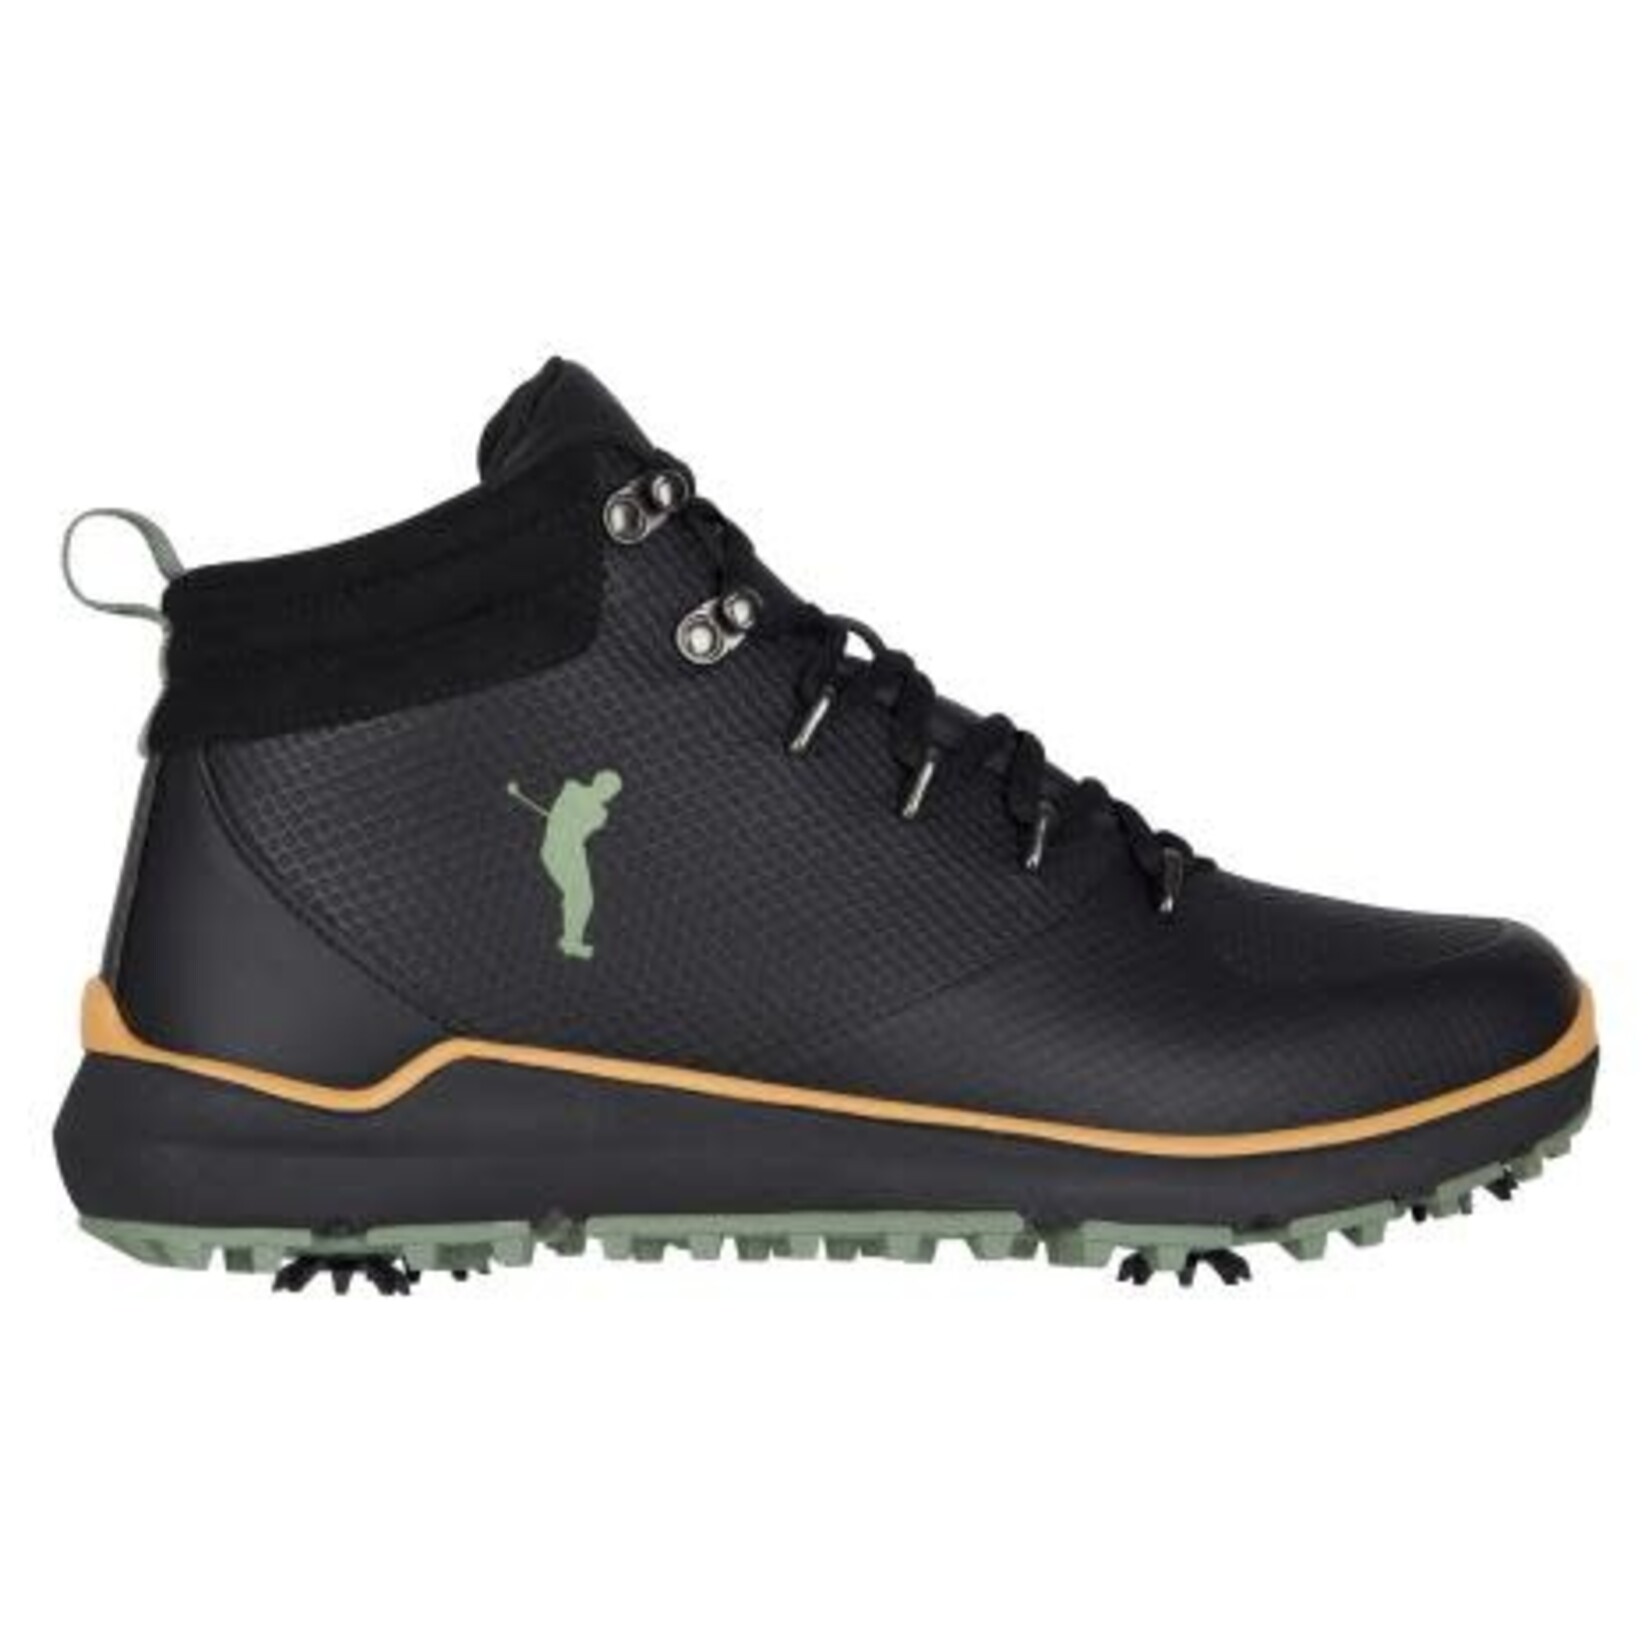 Golfino Boot - Black